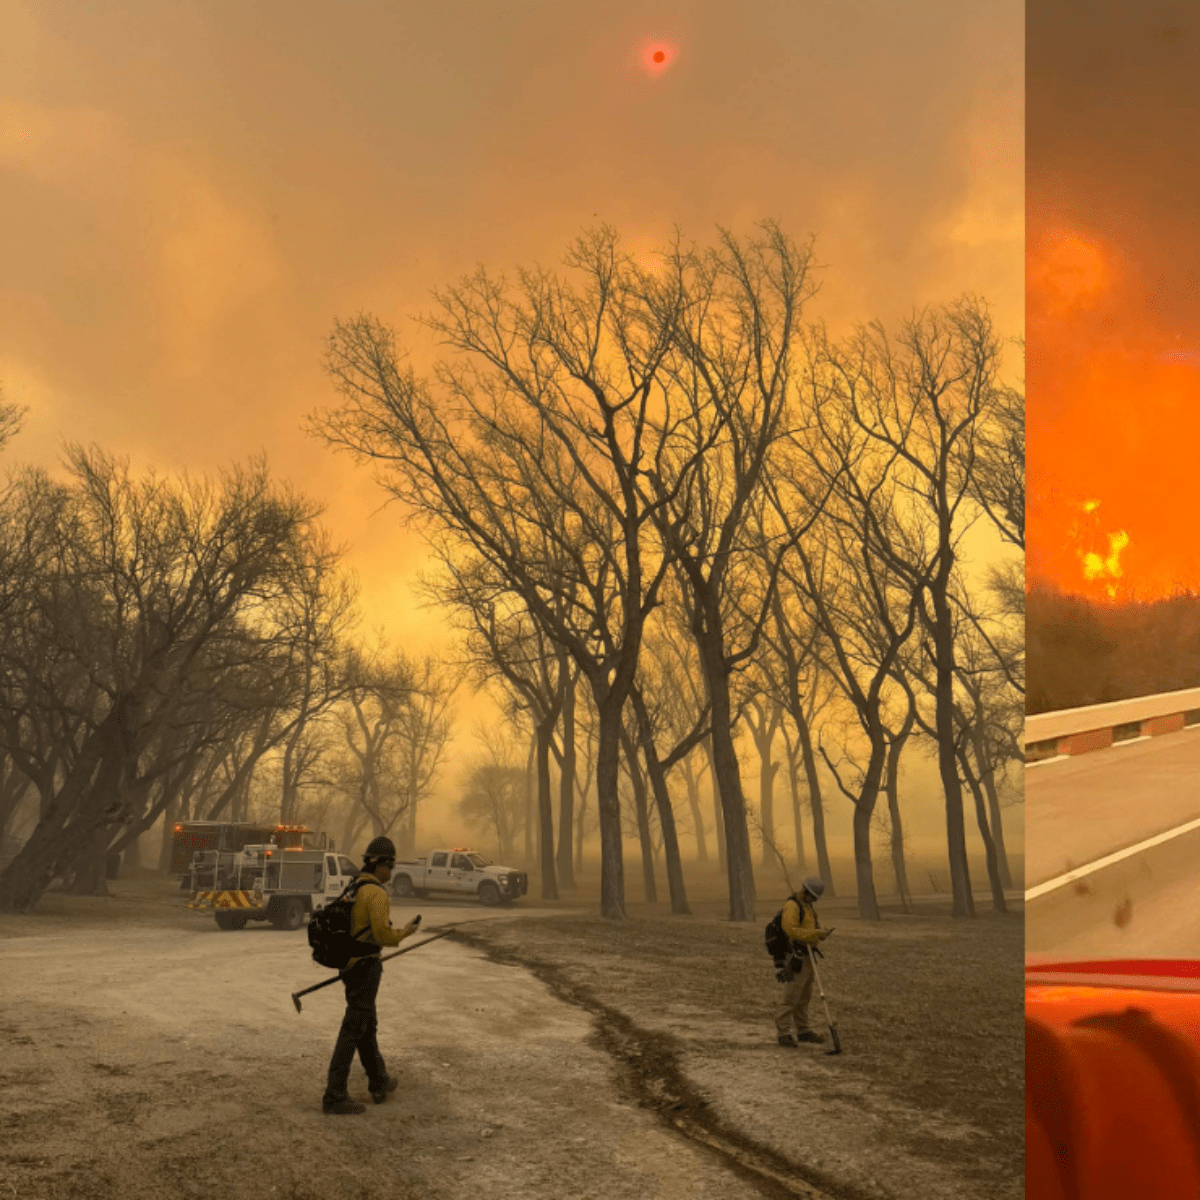 incendio consume más de 200 mil hectáreas de bosque en texas, estados unidos